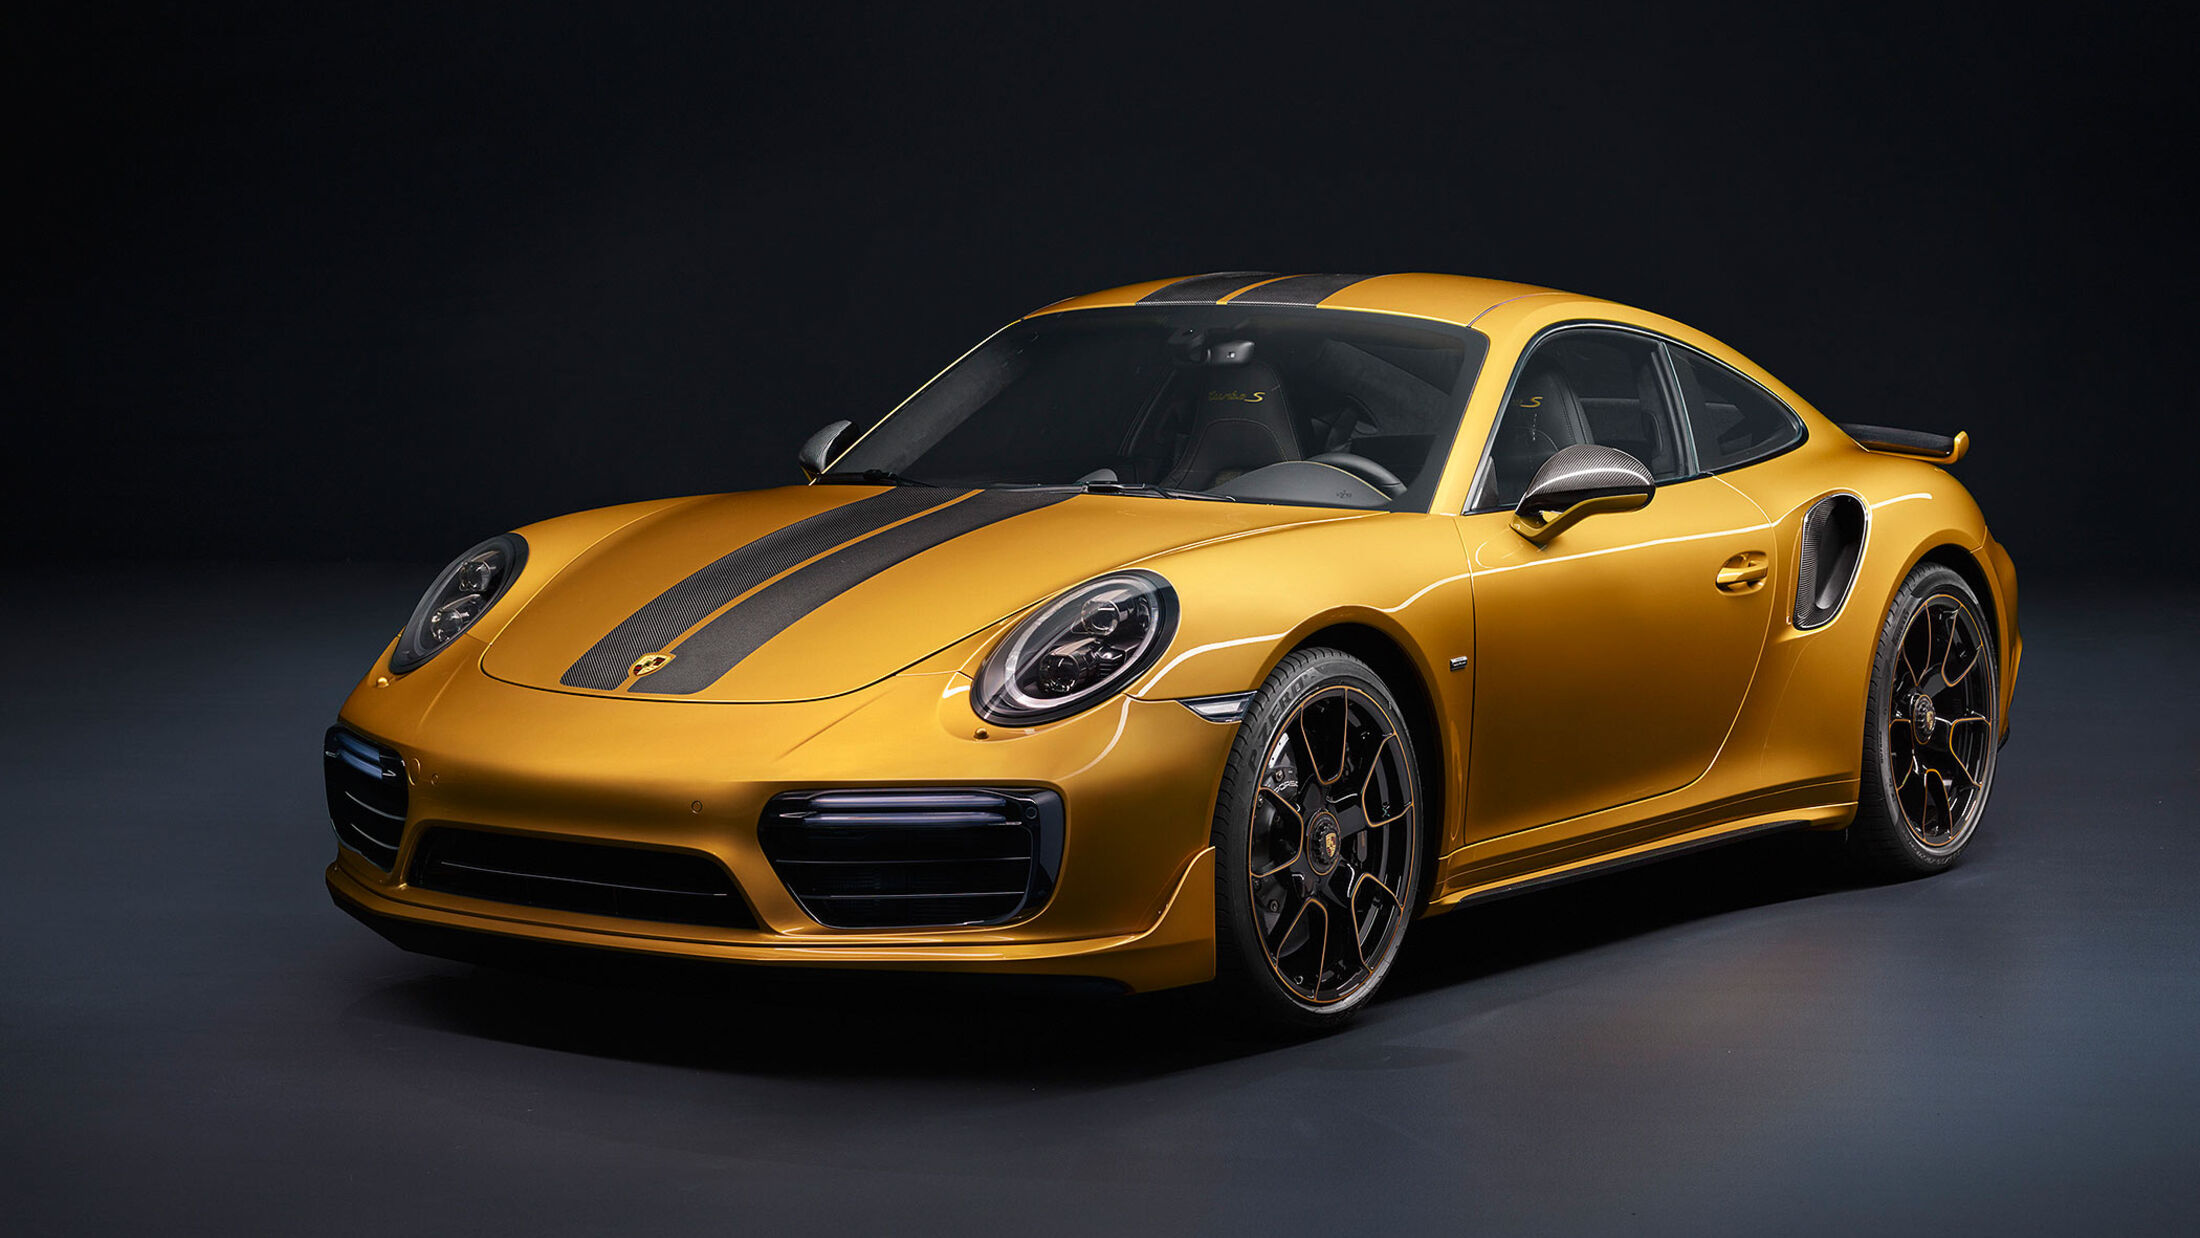 Fahrbericht: Porsche 911 Turbo S Exclusive Series im Test - WELT